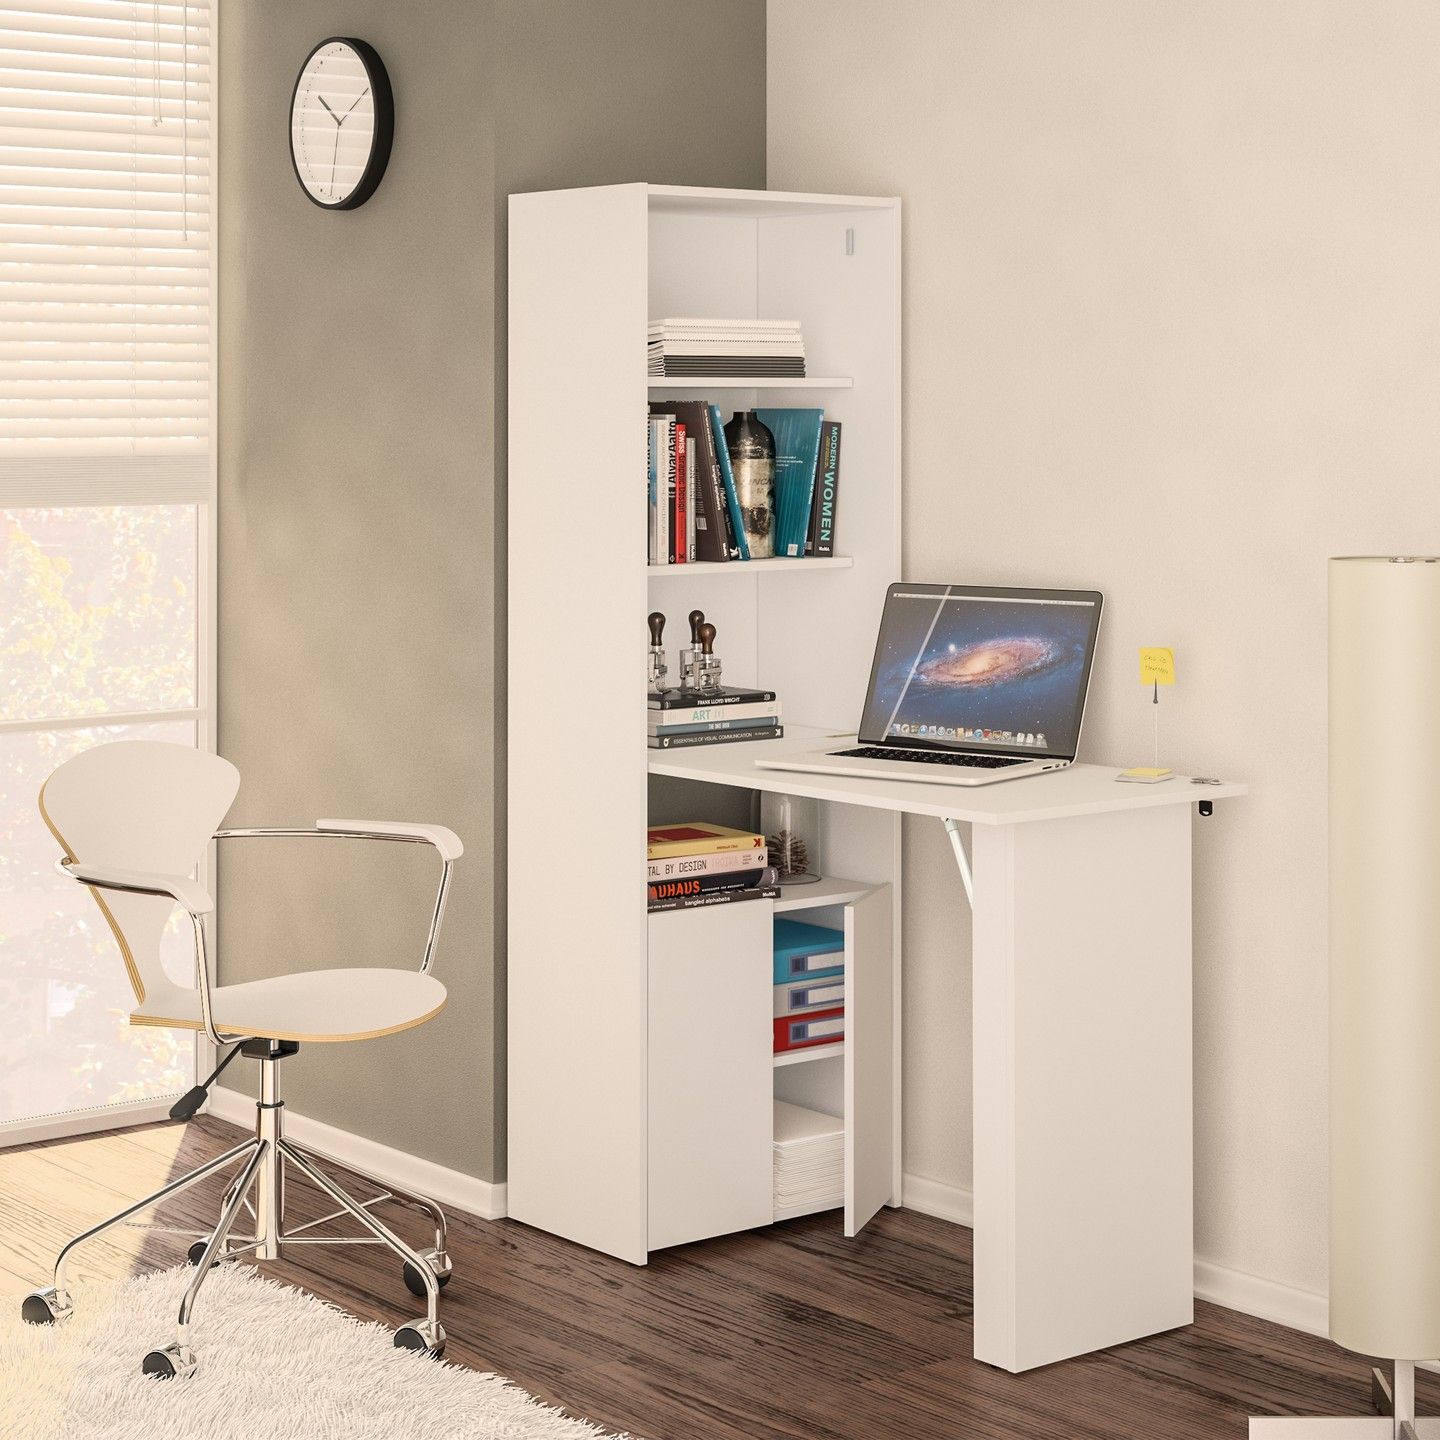 Multipurpose Cabinet with Desk, White